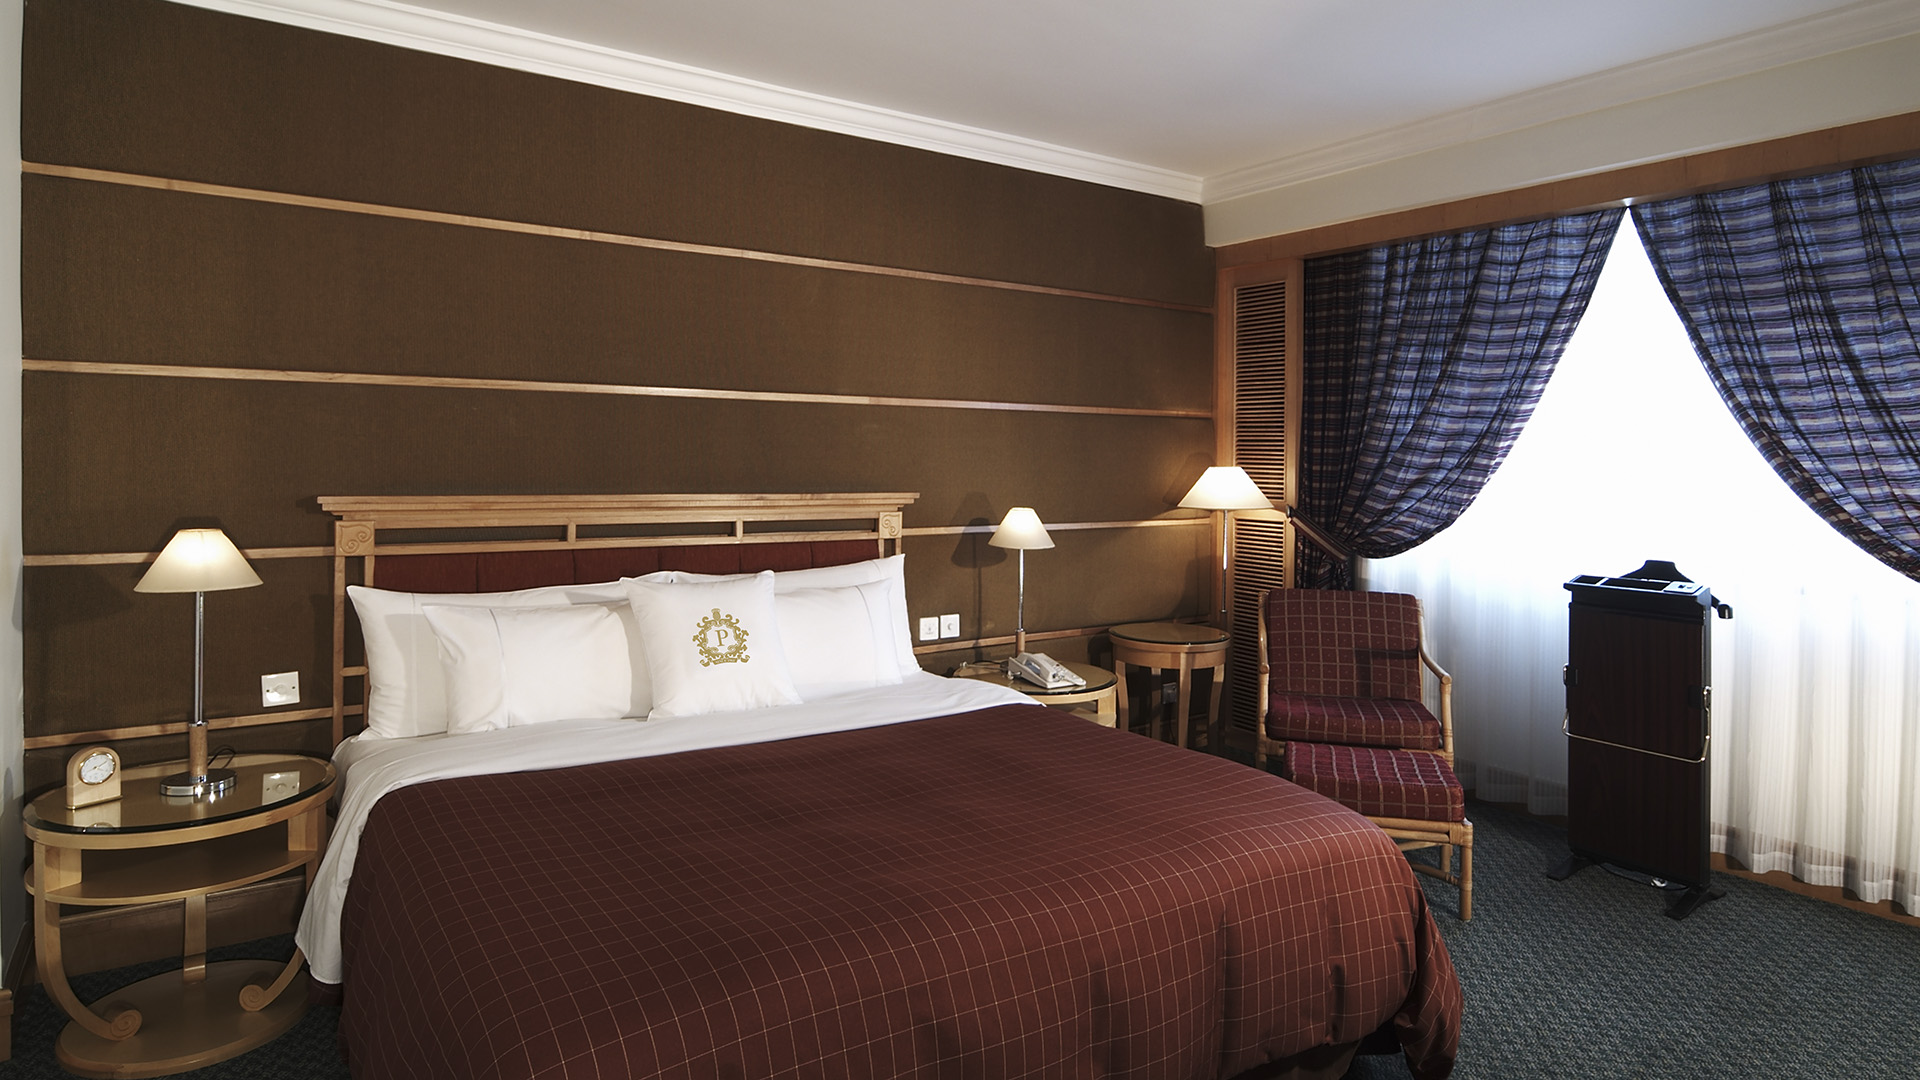 Wuxi rooms & suites